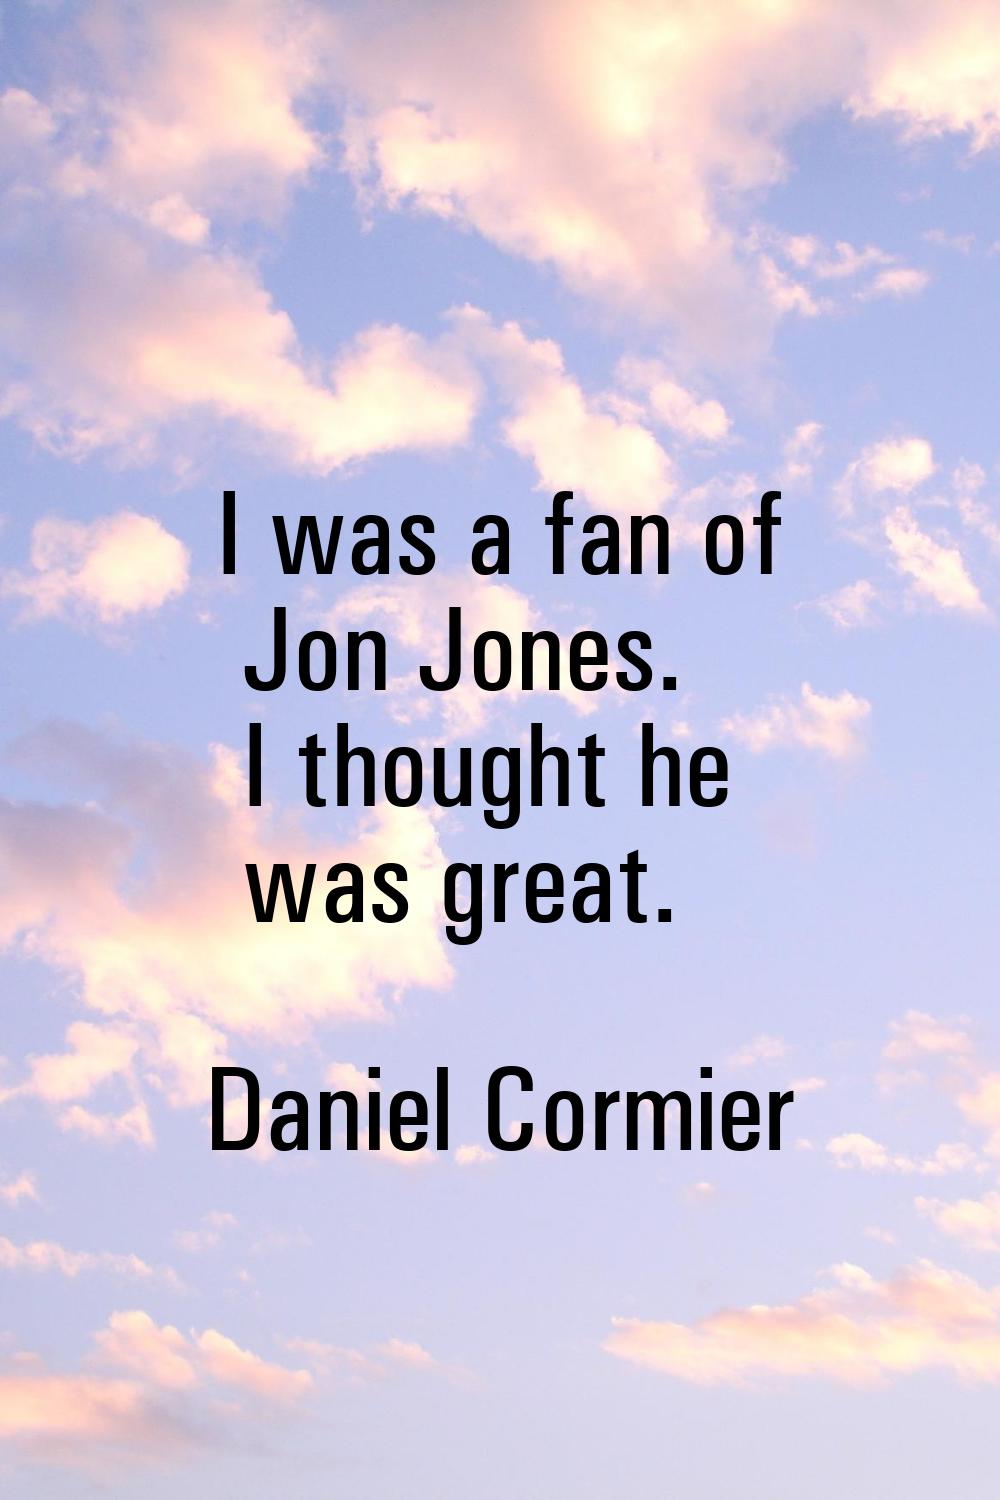 I was a fan of Jon Jones. I thought he was great.